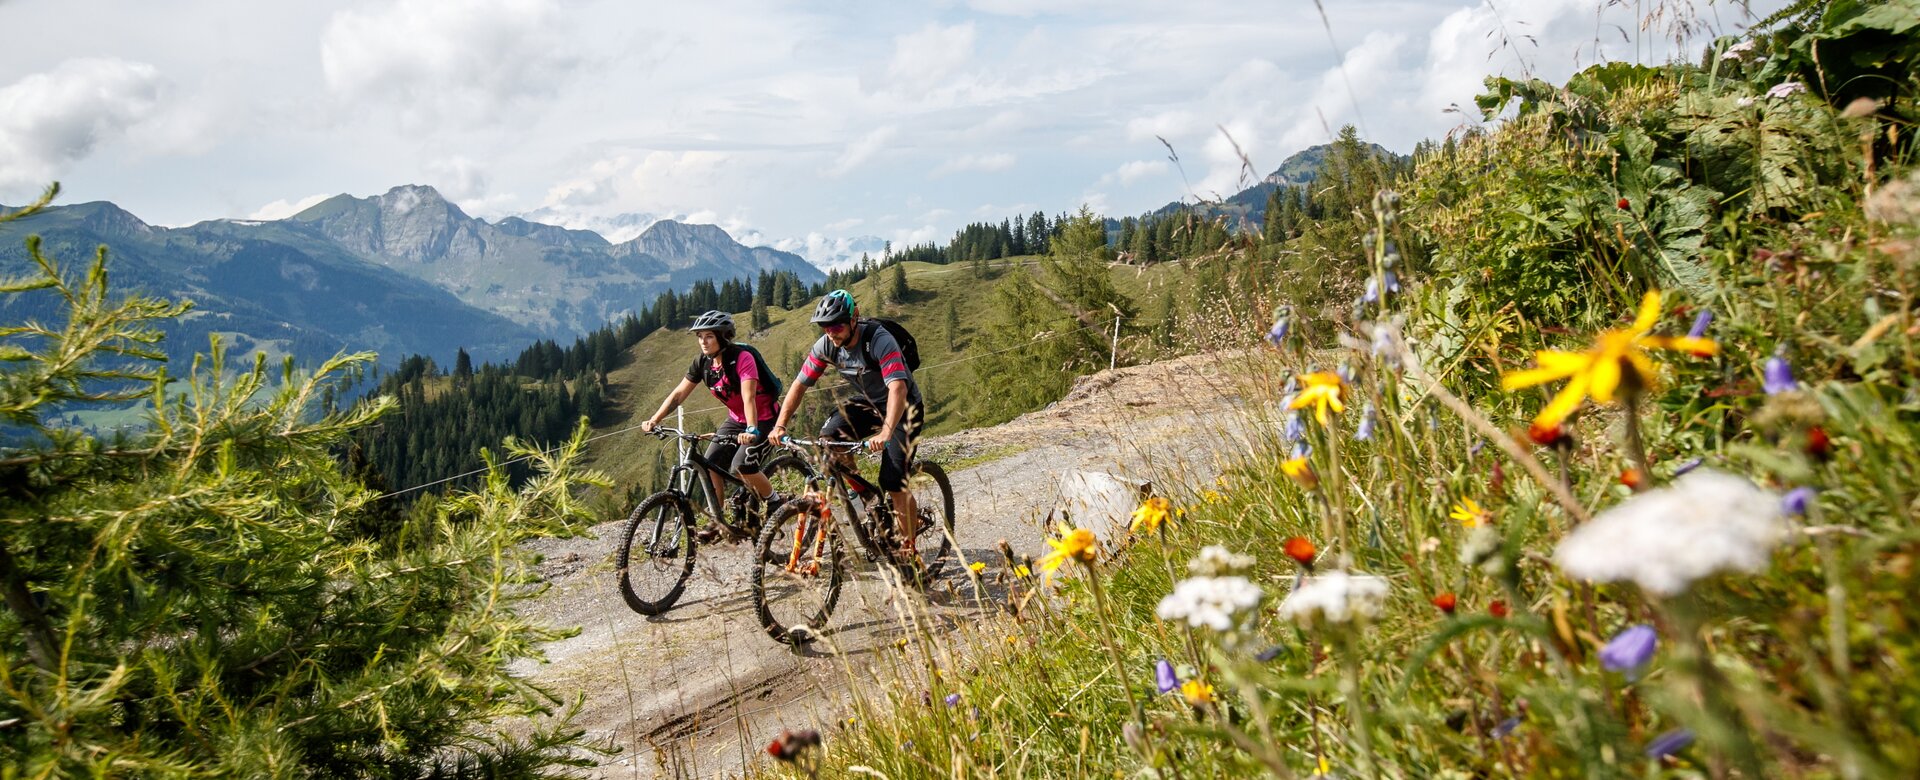 Mountainbiken auf den aussichtsreichen Bike Trails im Grossarltal - Sommer in Ski amadé | © Erwin Haiden